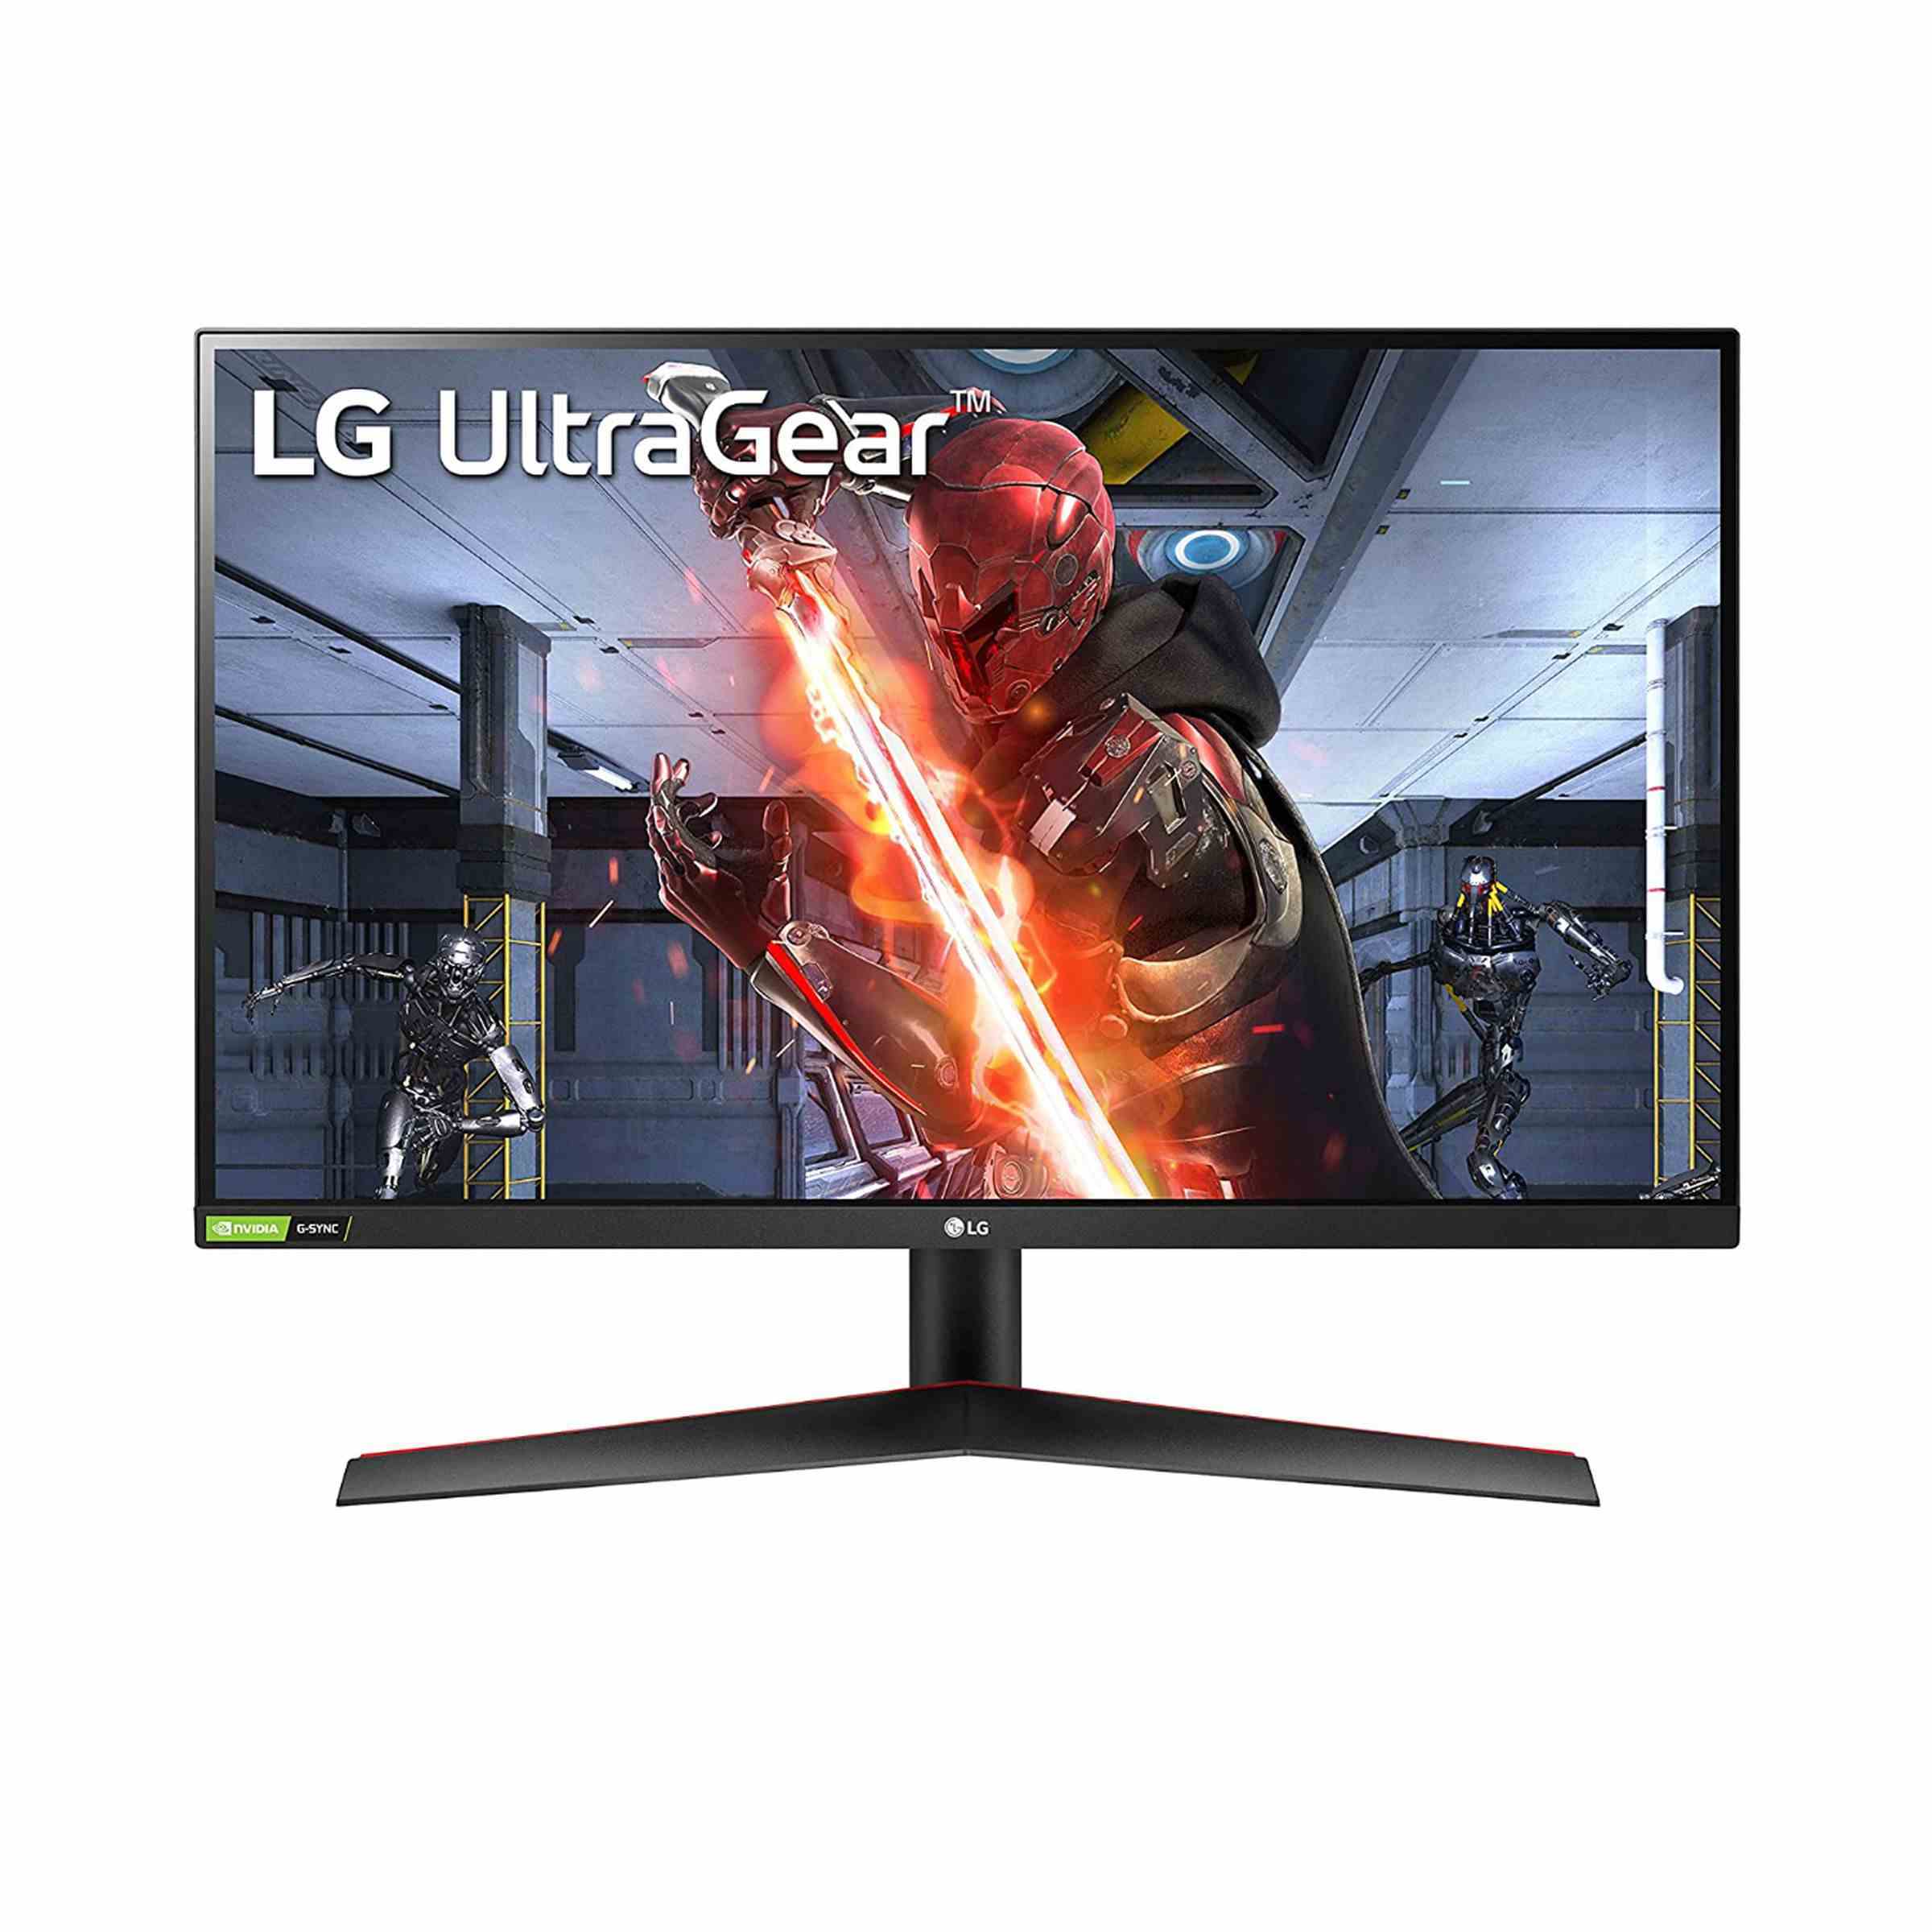 LG UltraGear oyun monitörü